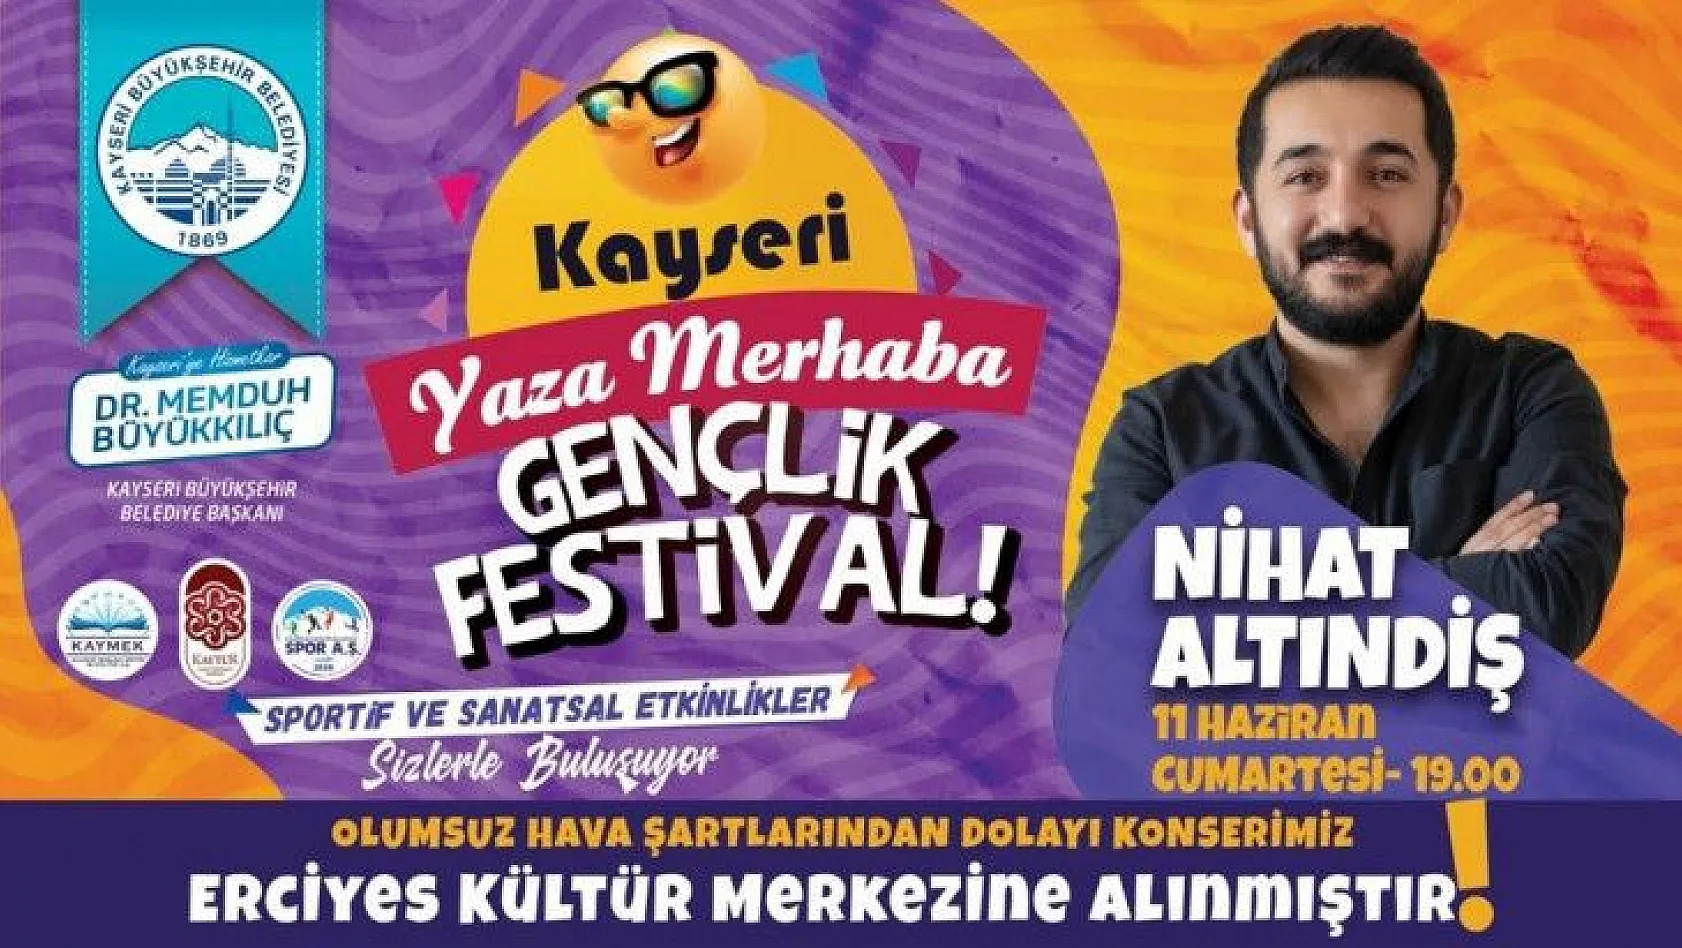 Gençlik Festivali hava koşulları nedeniyle Erciyes Kültür Merkezi'ne alındı